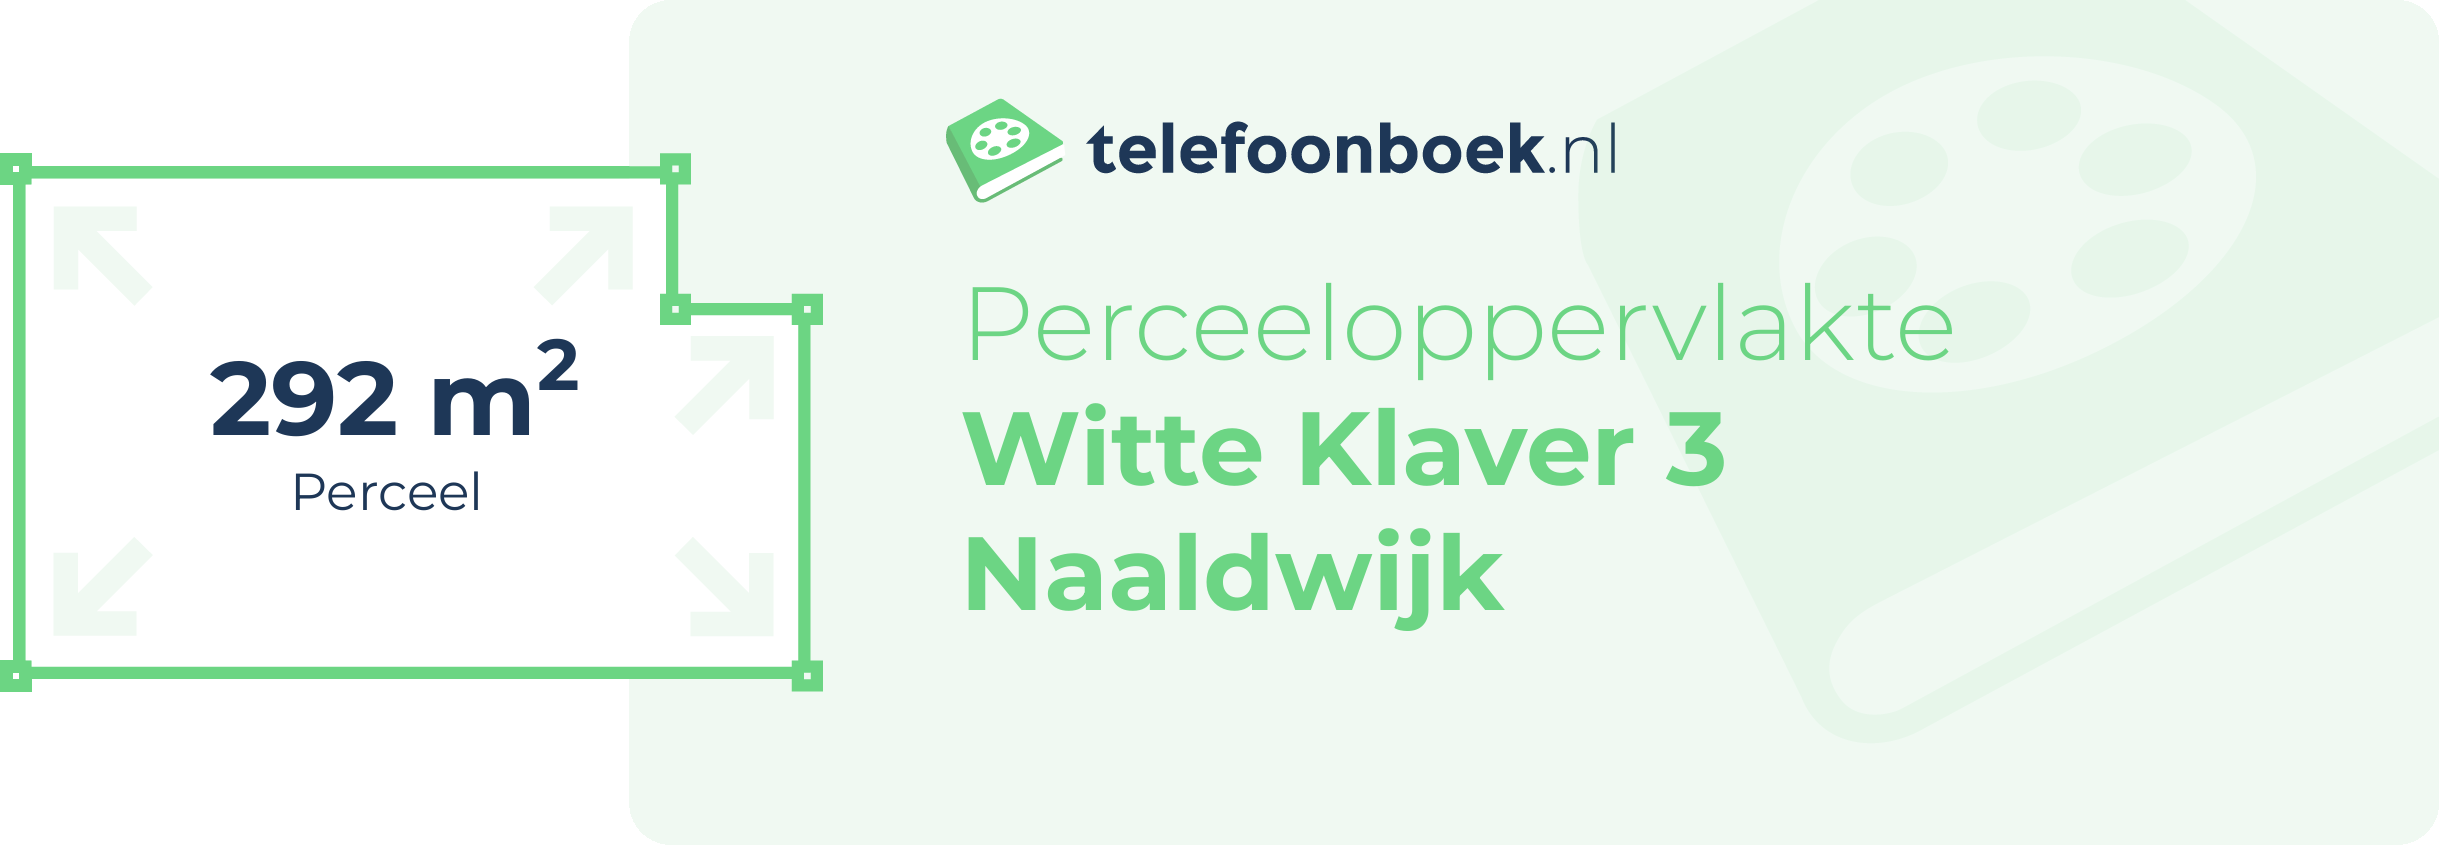 Perceeloppervlakte Witte Klaver 3 Naaldwijk